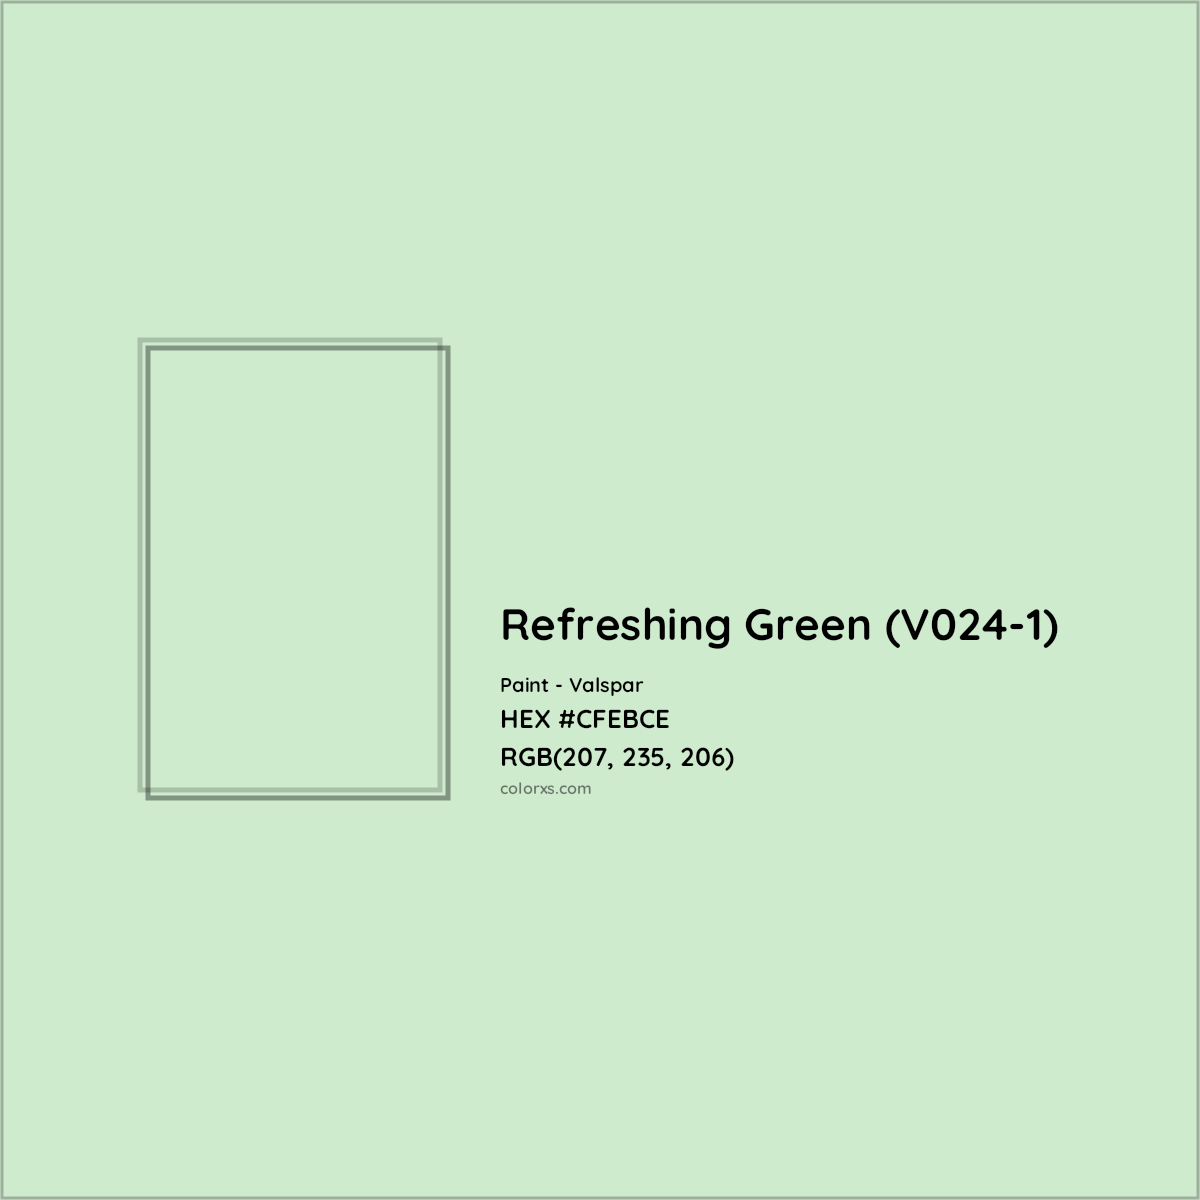 HEX #CFEBCE Refreshing Green (V024-1) Paint Valspar - Color Code